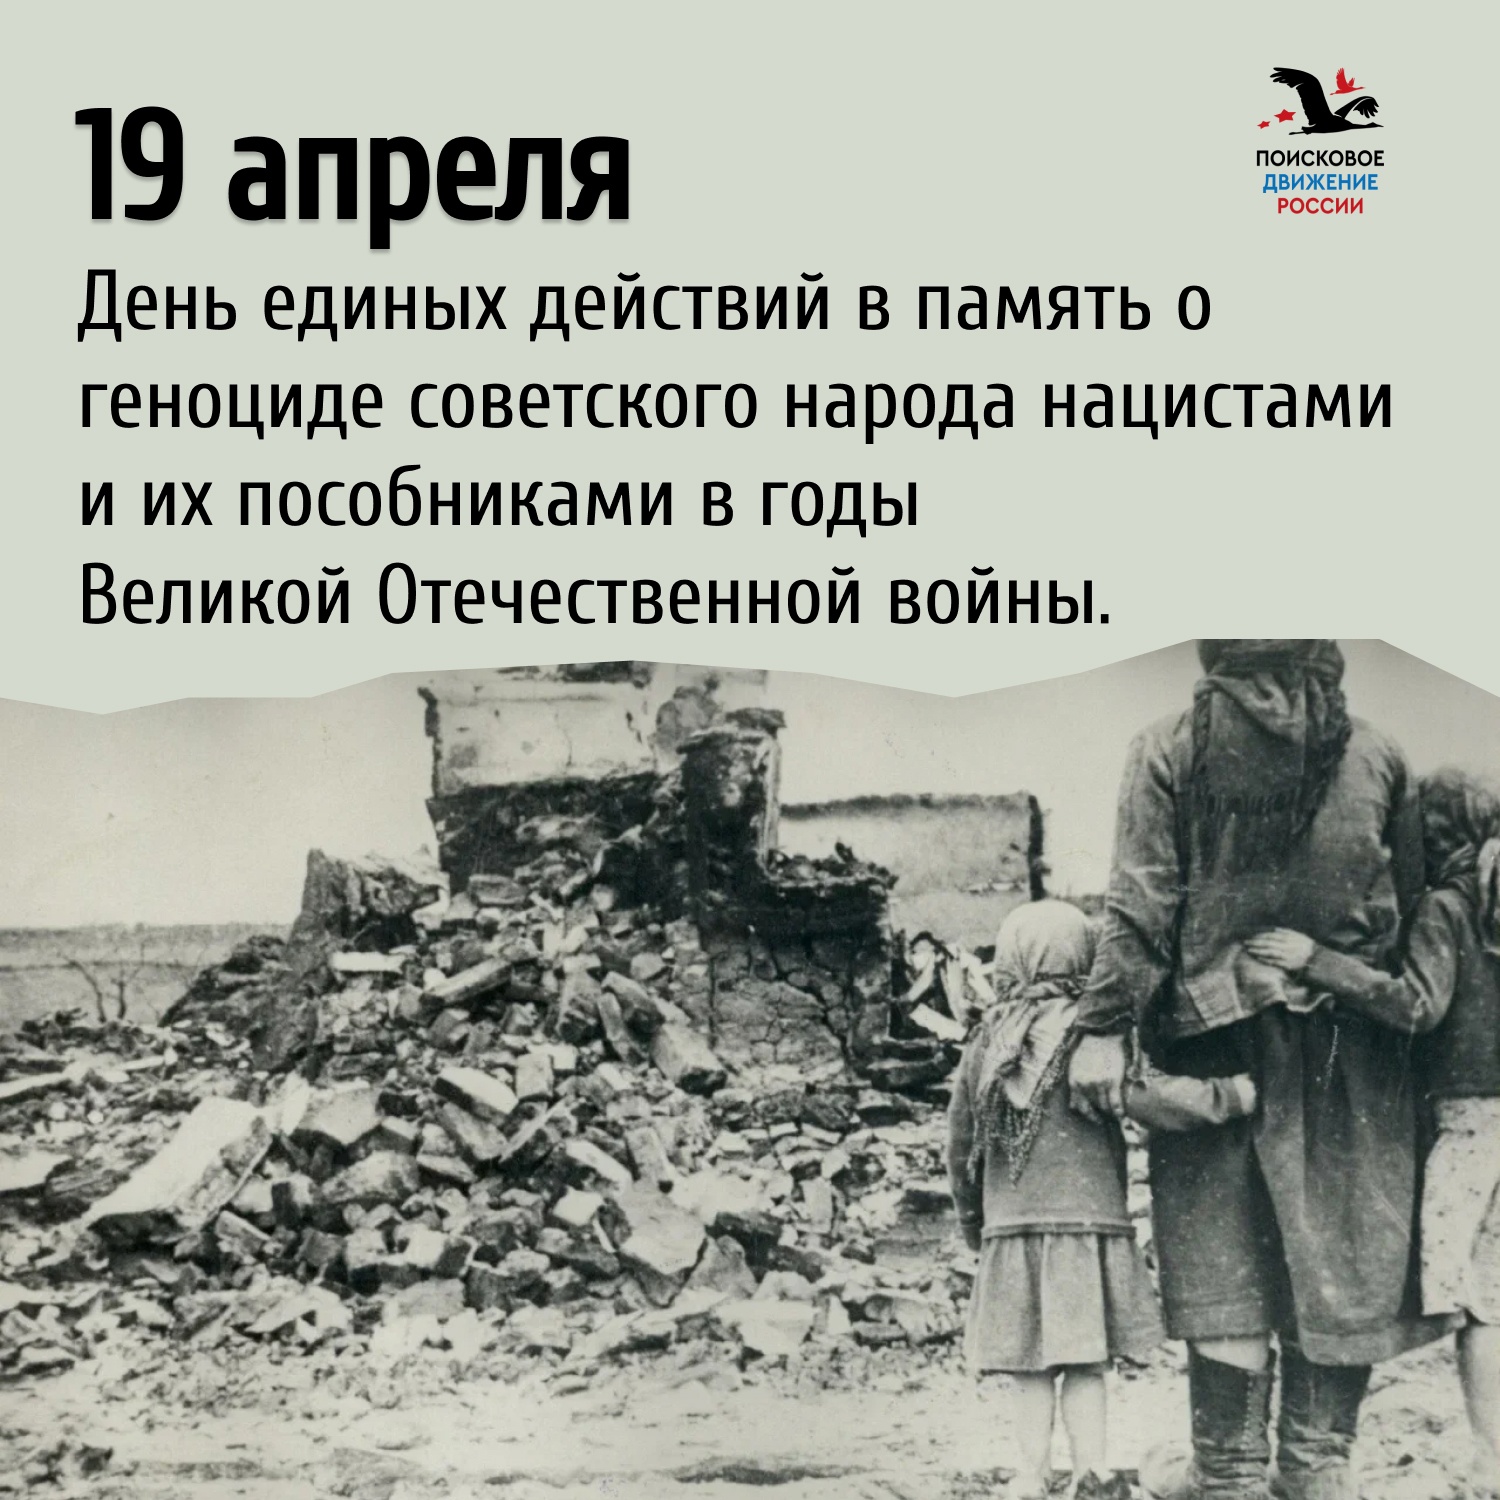 19 апреля — День единых действий в память о геноциде советского народа нацистами и их пособниками в годы Великой Отечественной войны